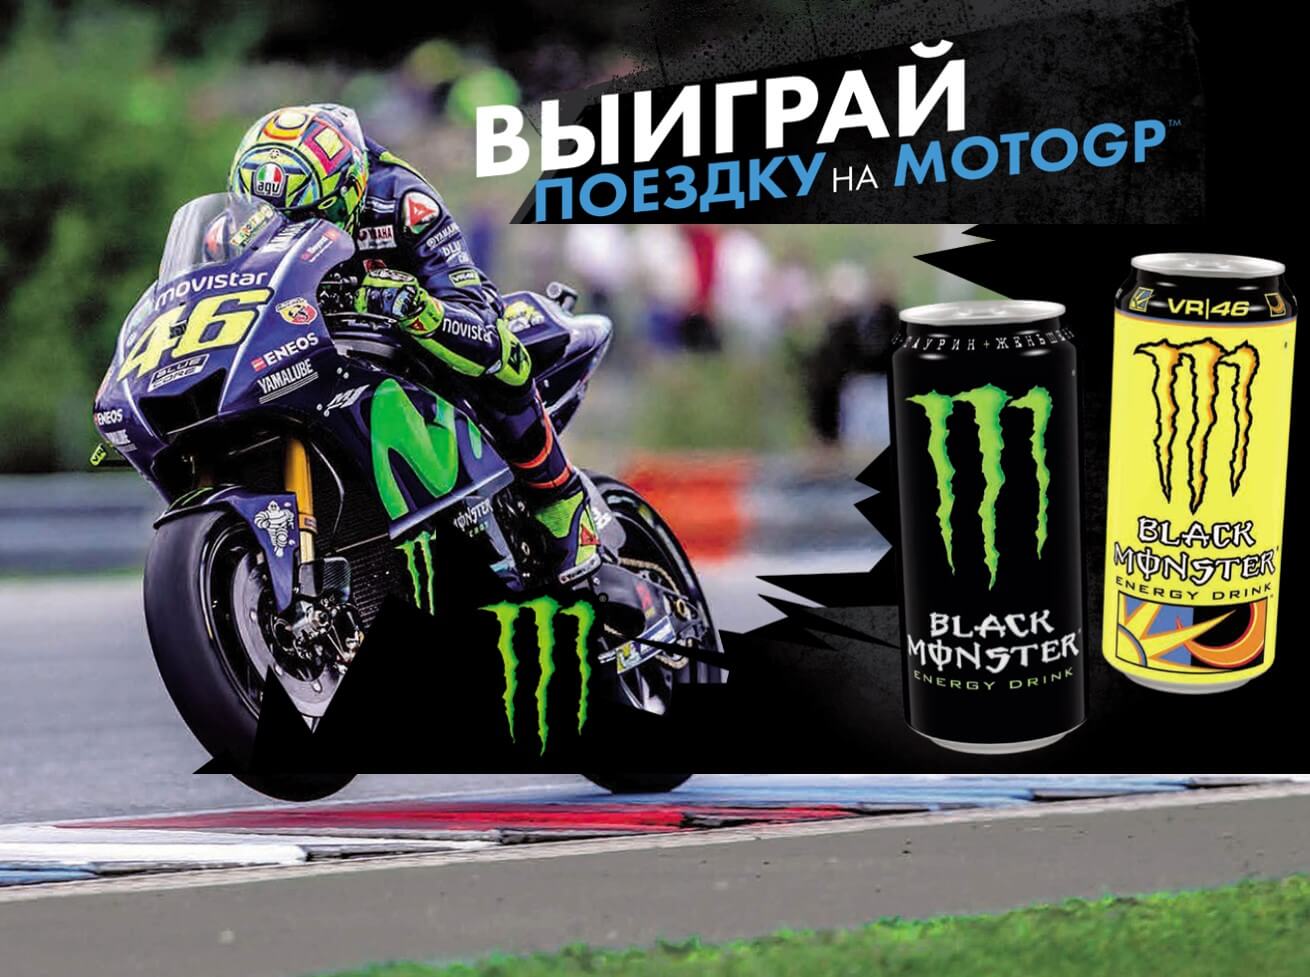 Купіть 2 банки безалкогольного напою Black Monster в магазині «   Діксі   », Реєструйте чек на сайті акції та вигравайте поїздку на MotoGP або куртку від Валентино Россі